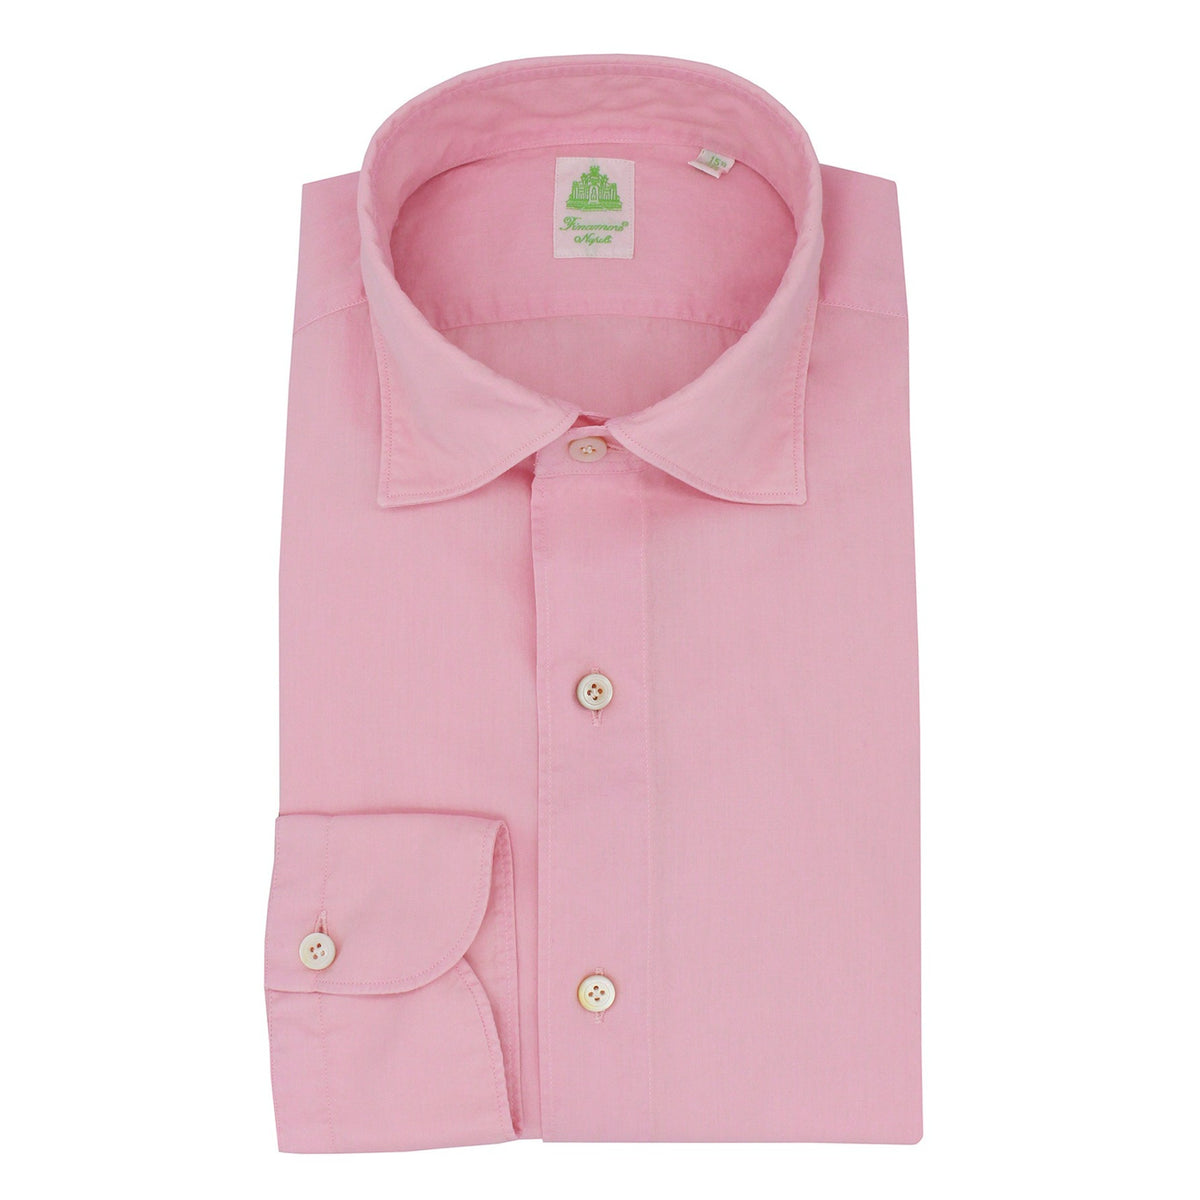 Tokio shirt slim fit cotton garment dyed pink